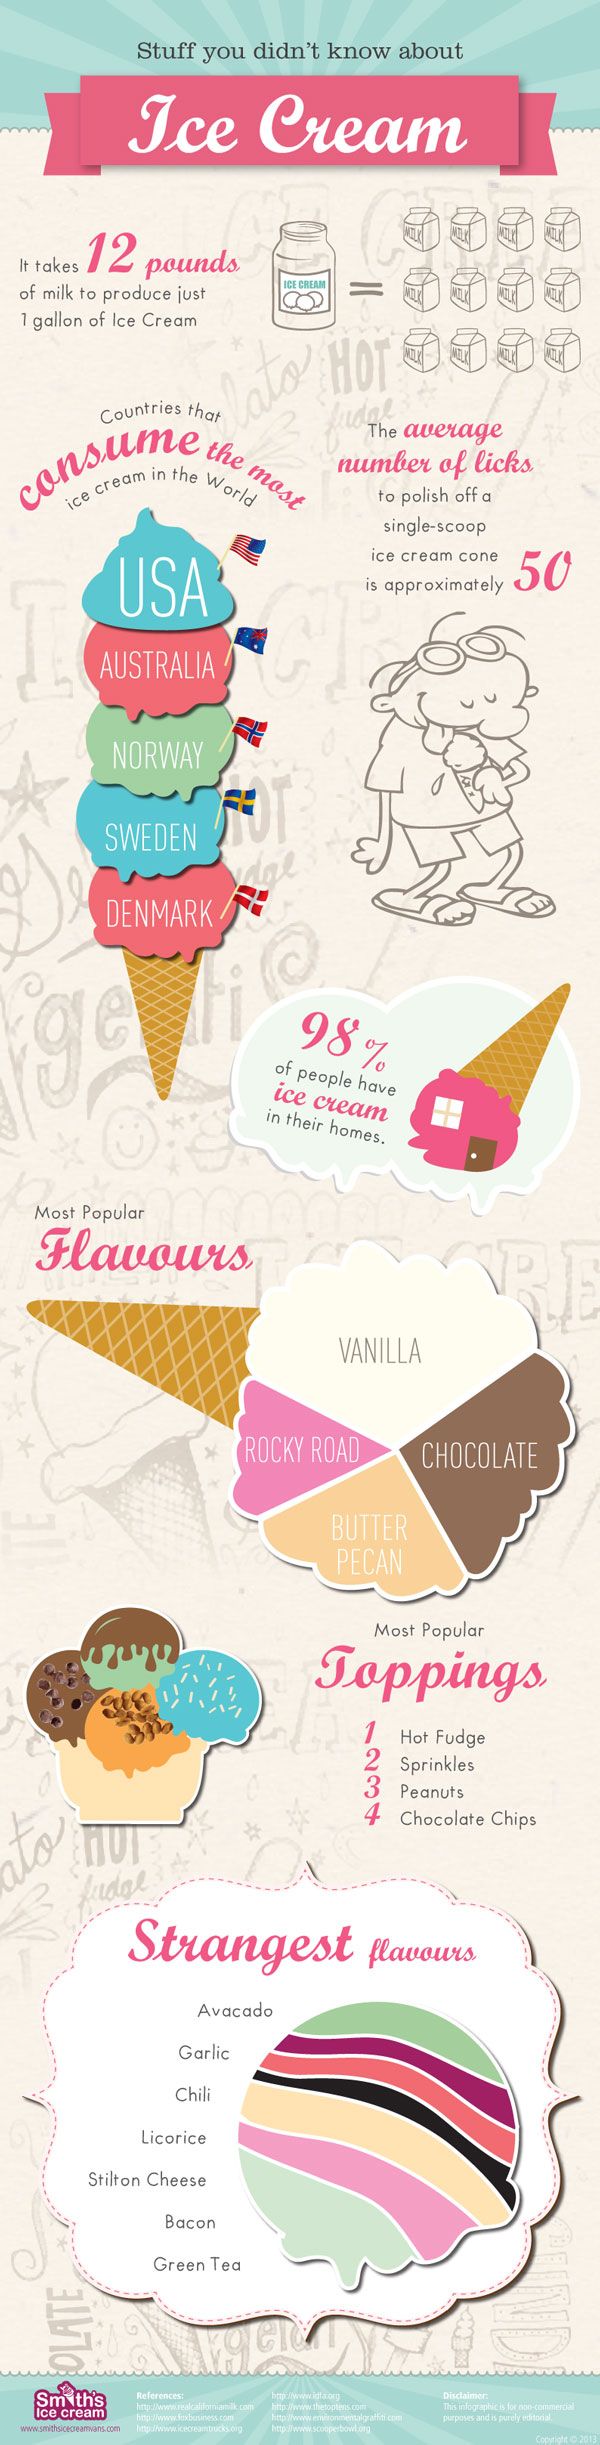 Smiths-Ice-Cream-Infographic